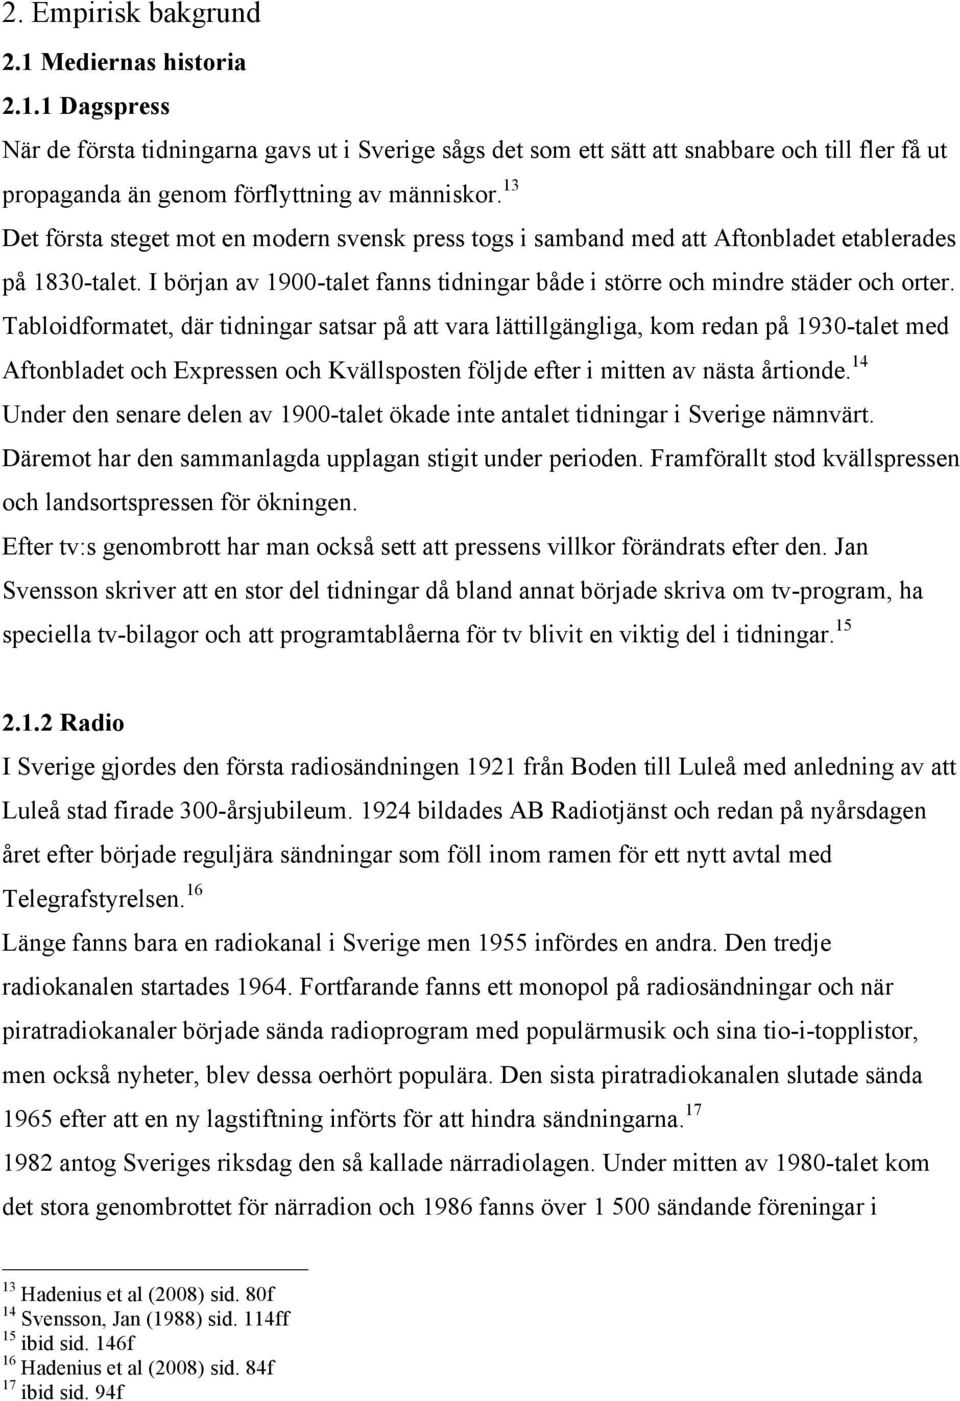 Tabloidformatet, där tidningar satsar på att vara lättillgängliga, kom redan på 1930-talet med Aftonbladet och Expressen och Kvällsposten följde efter i mitten av nästa årtionde.